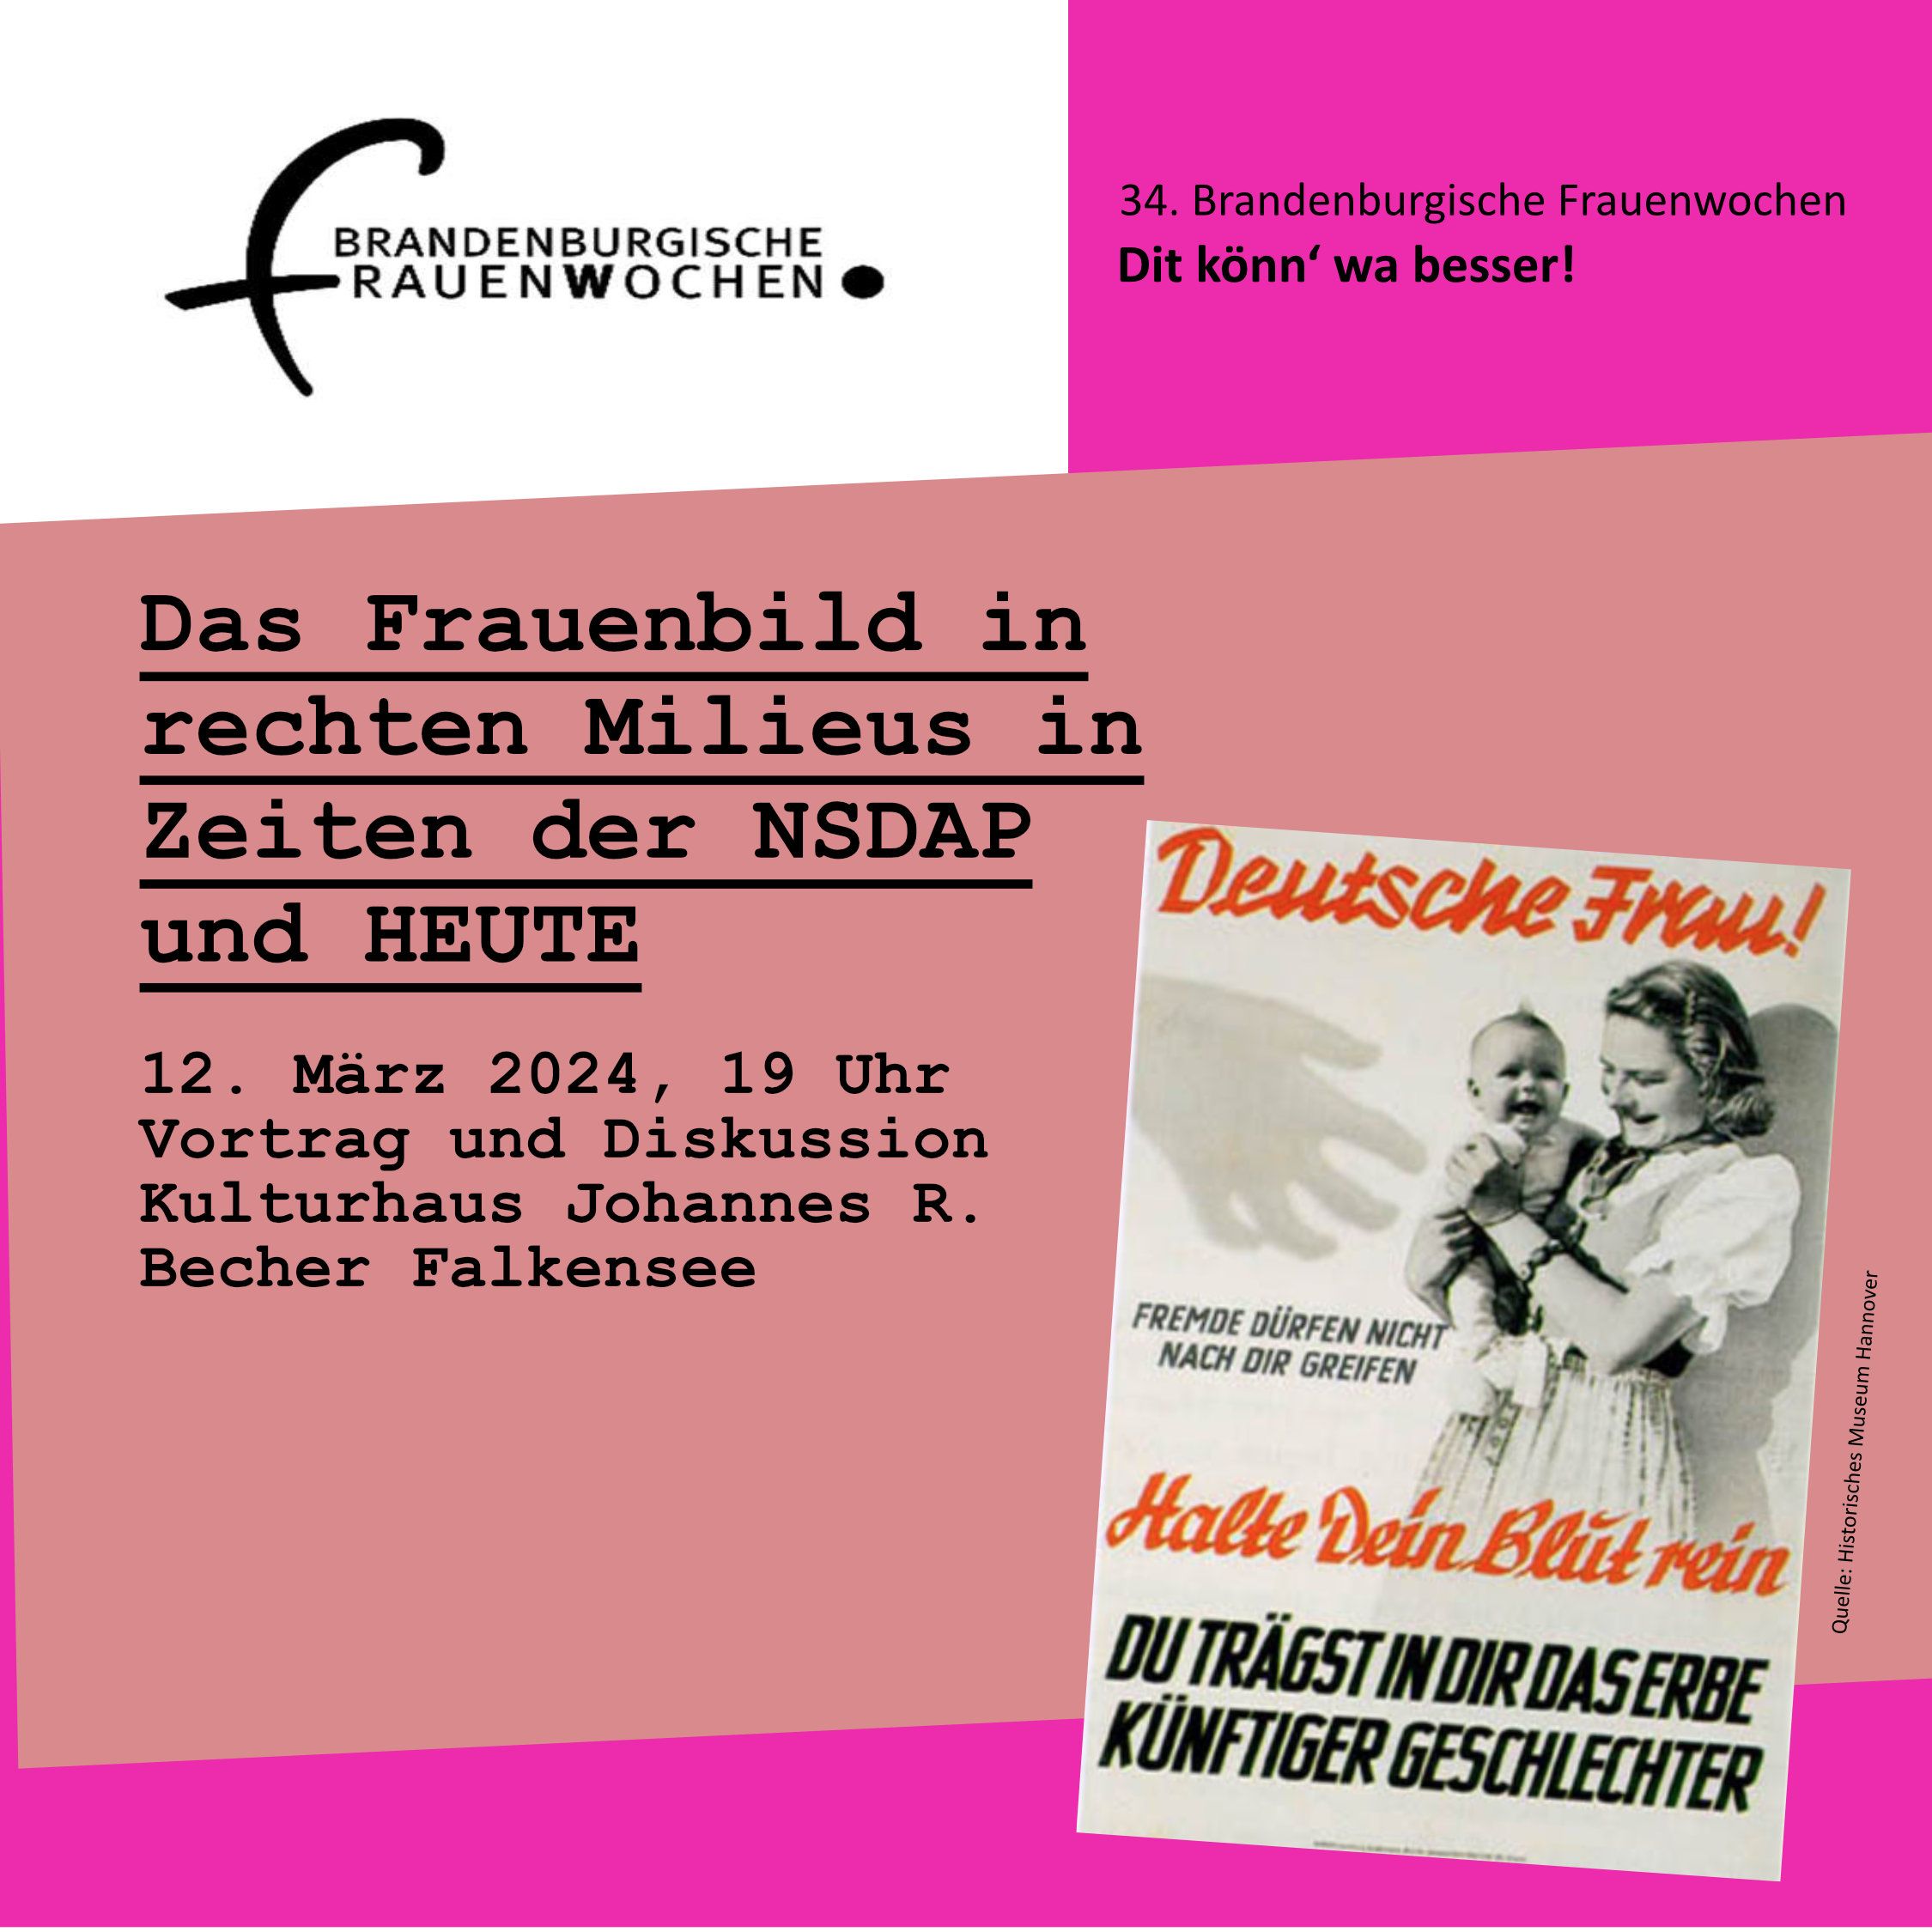 Frauenwoche, Vortrag Frauenbild in rechten Milieus, 12.3.2024, 19 Uhr, R.-Becher Haus, Falkensee